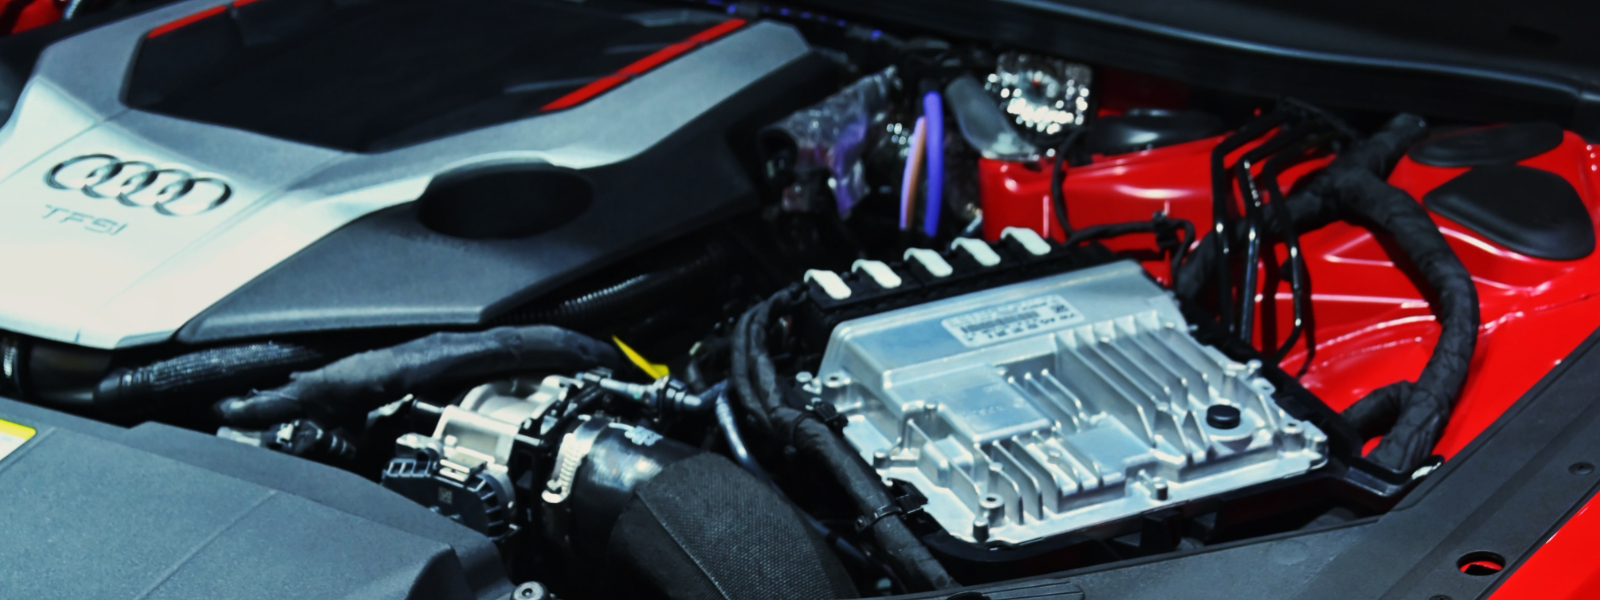 12FIX OÜ - Tegeleme mootorsõidukite hoolduse ja remondiga, pakkudes kvaliteetseid teenuseid, mis hõlmavad mootori remon...